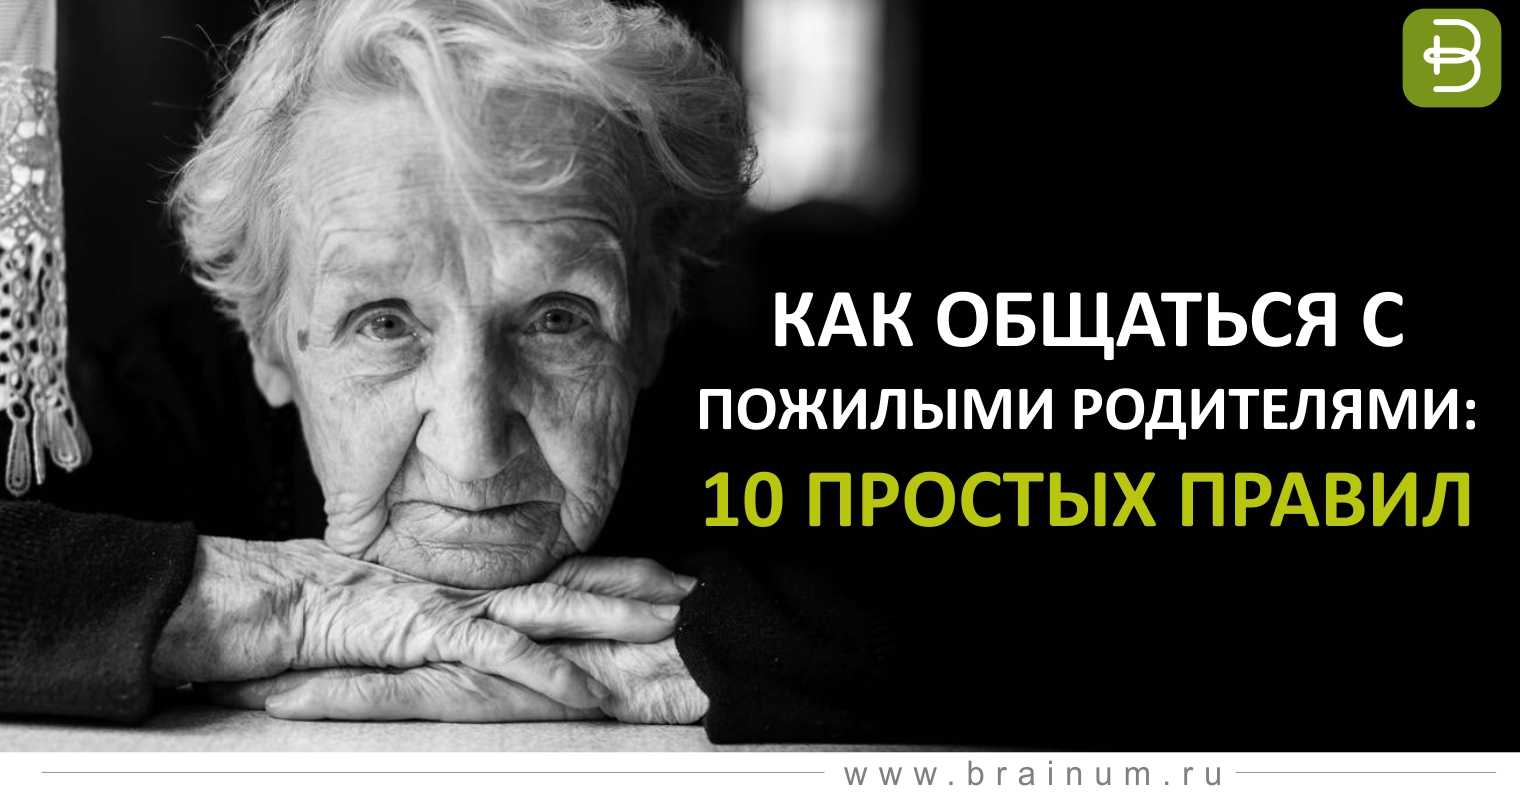 7 признаков, что ты успешен, даже если не осознаёшь этого | brodude.ru